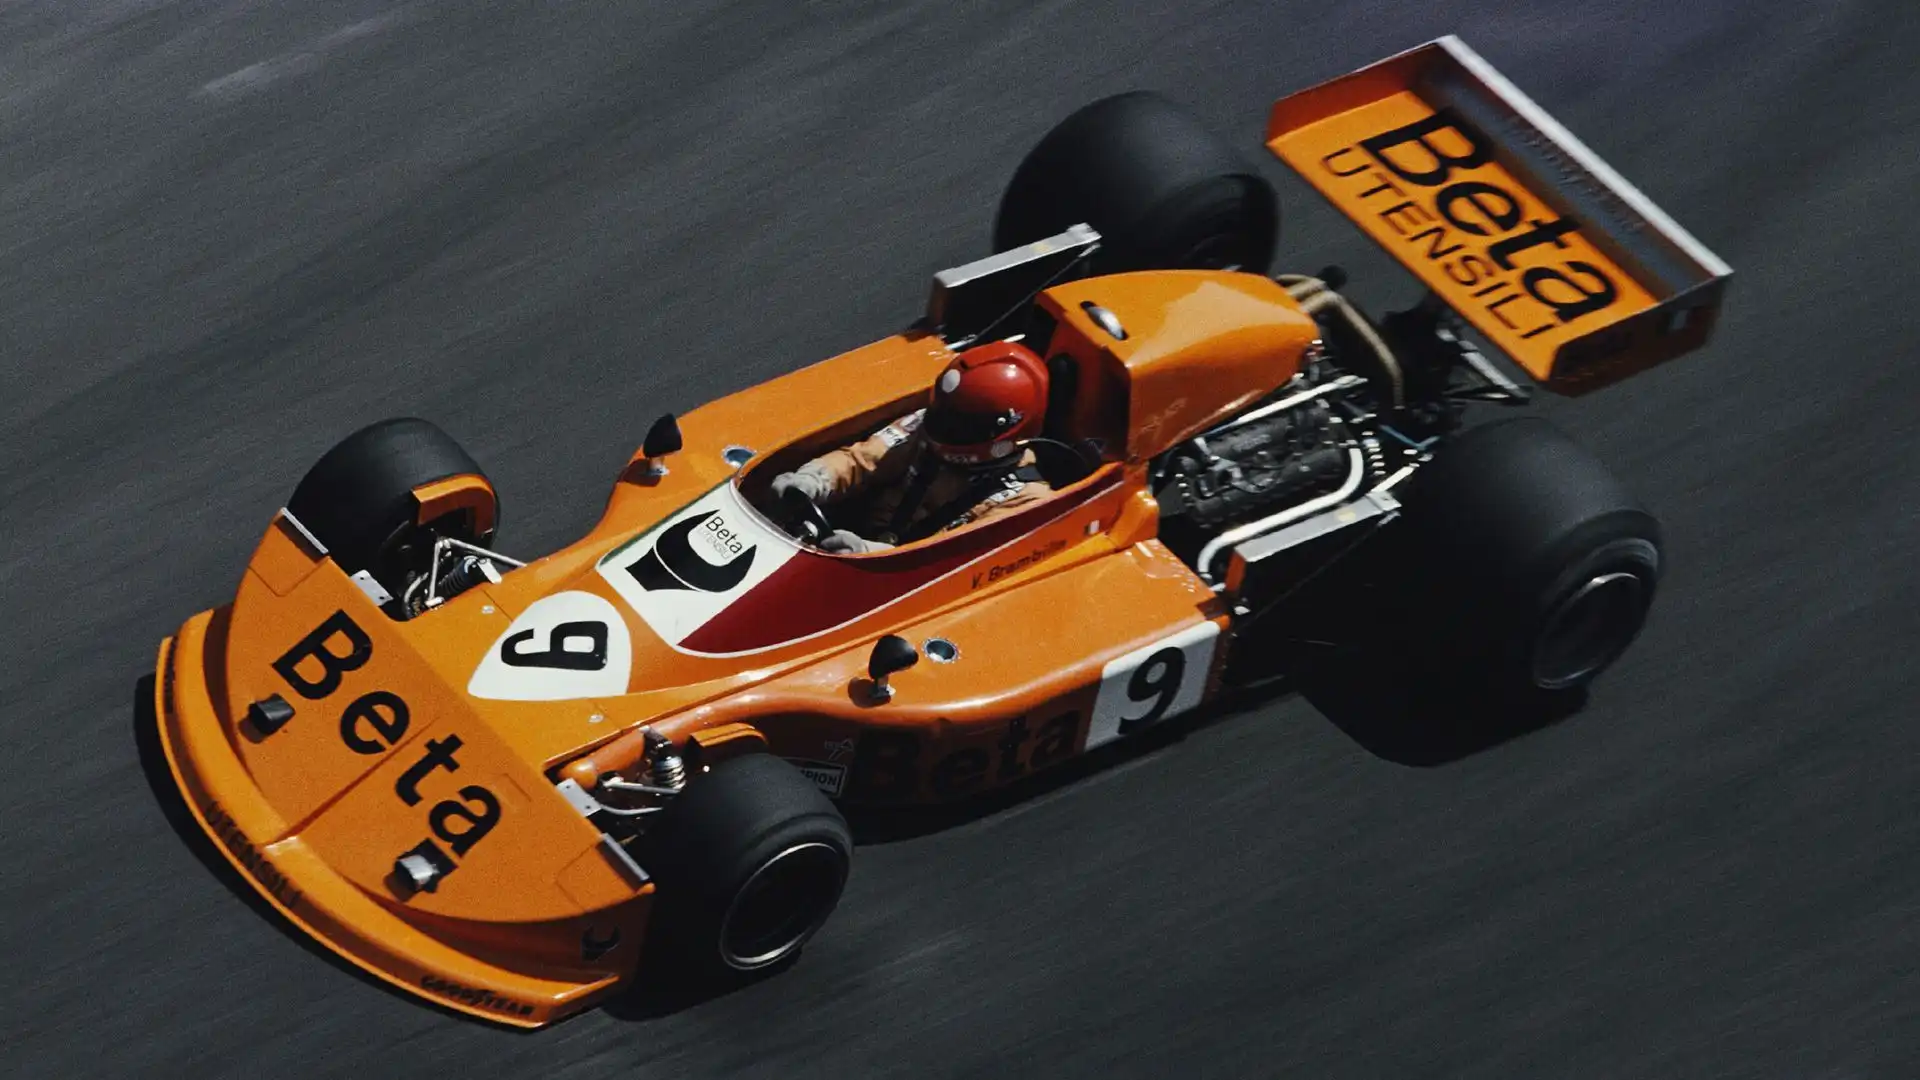 Brambilla, nato a pochi metri dalla pista di Monza, corse dal 1974 al 1976 con la scuderia britannica